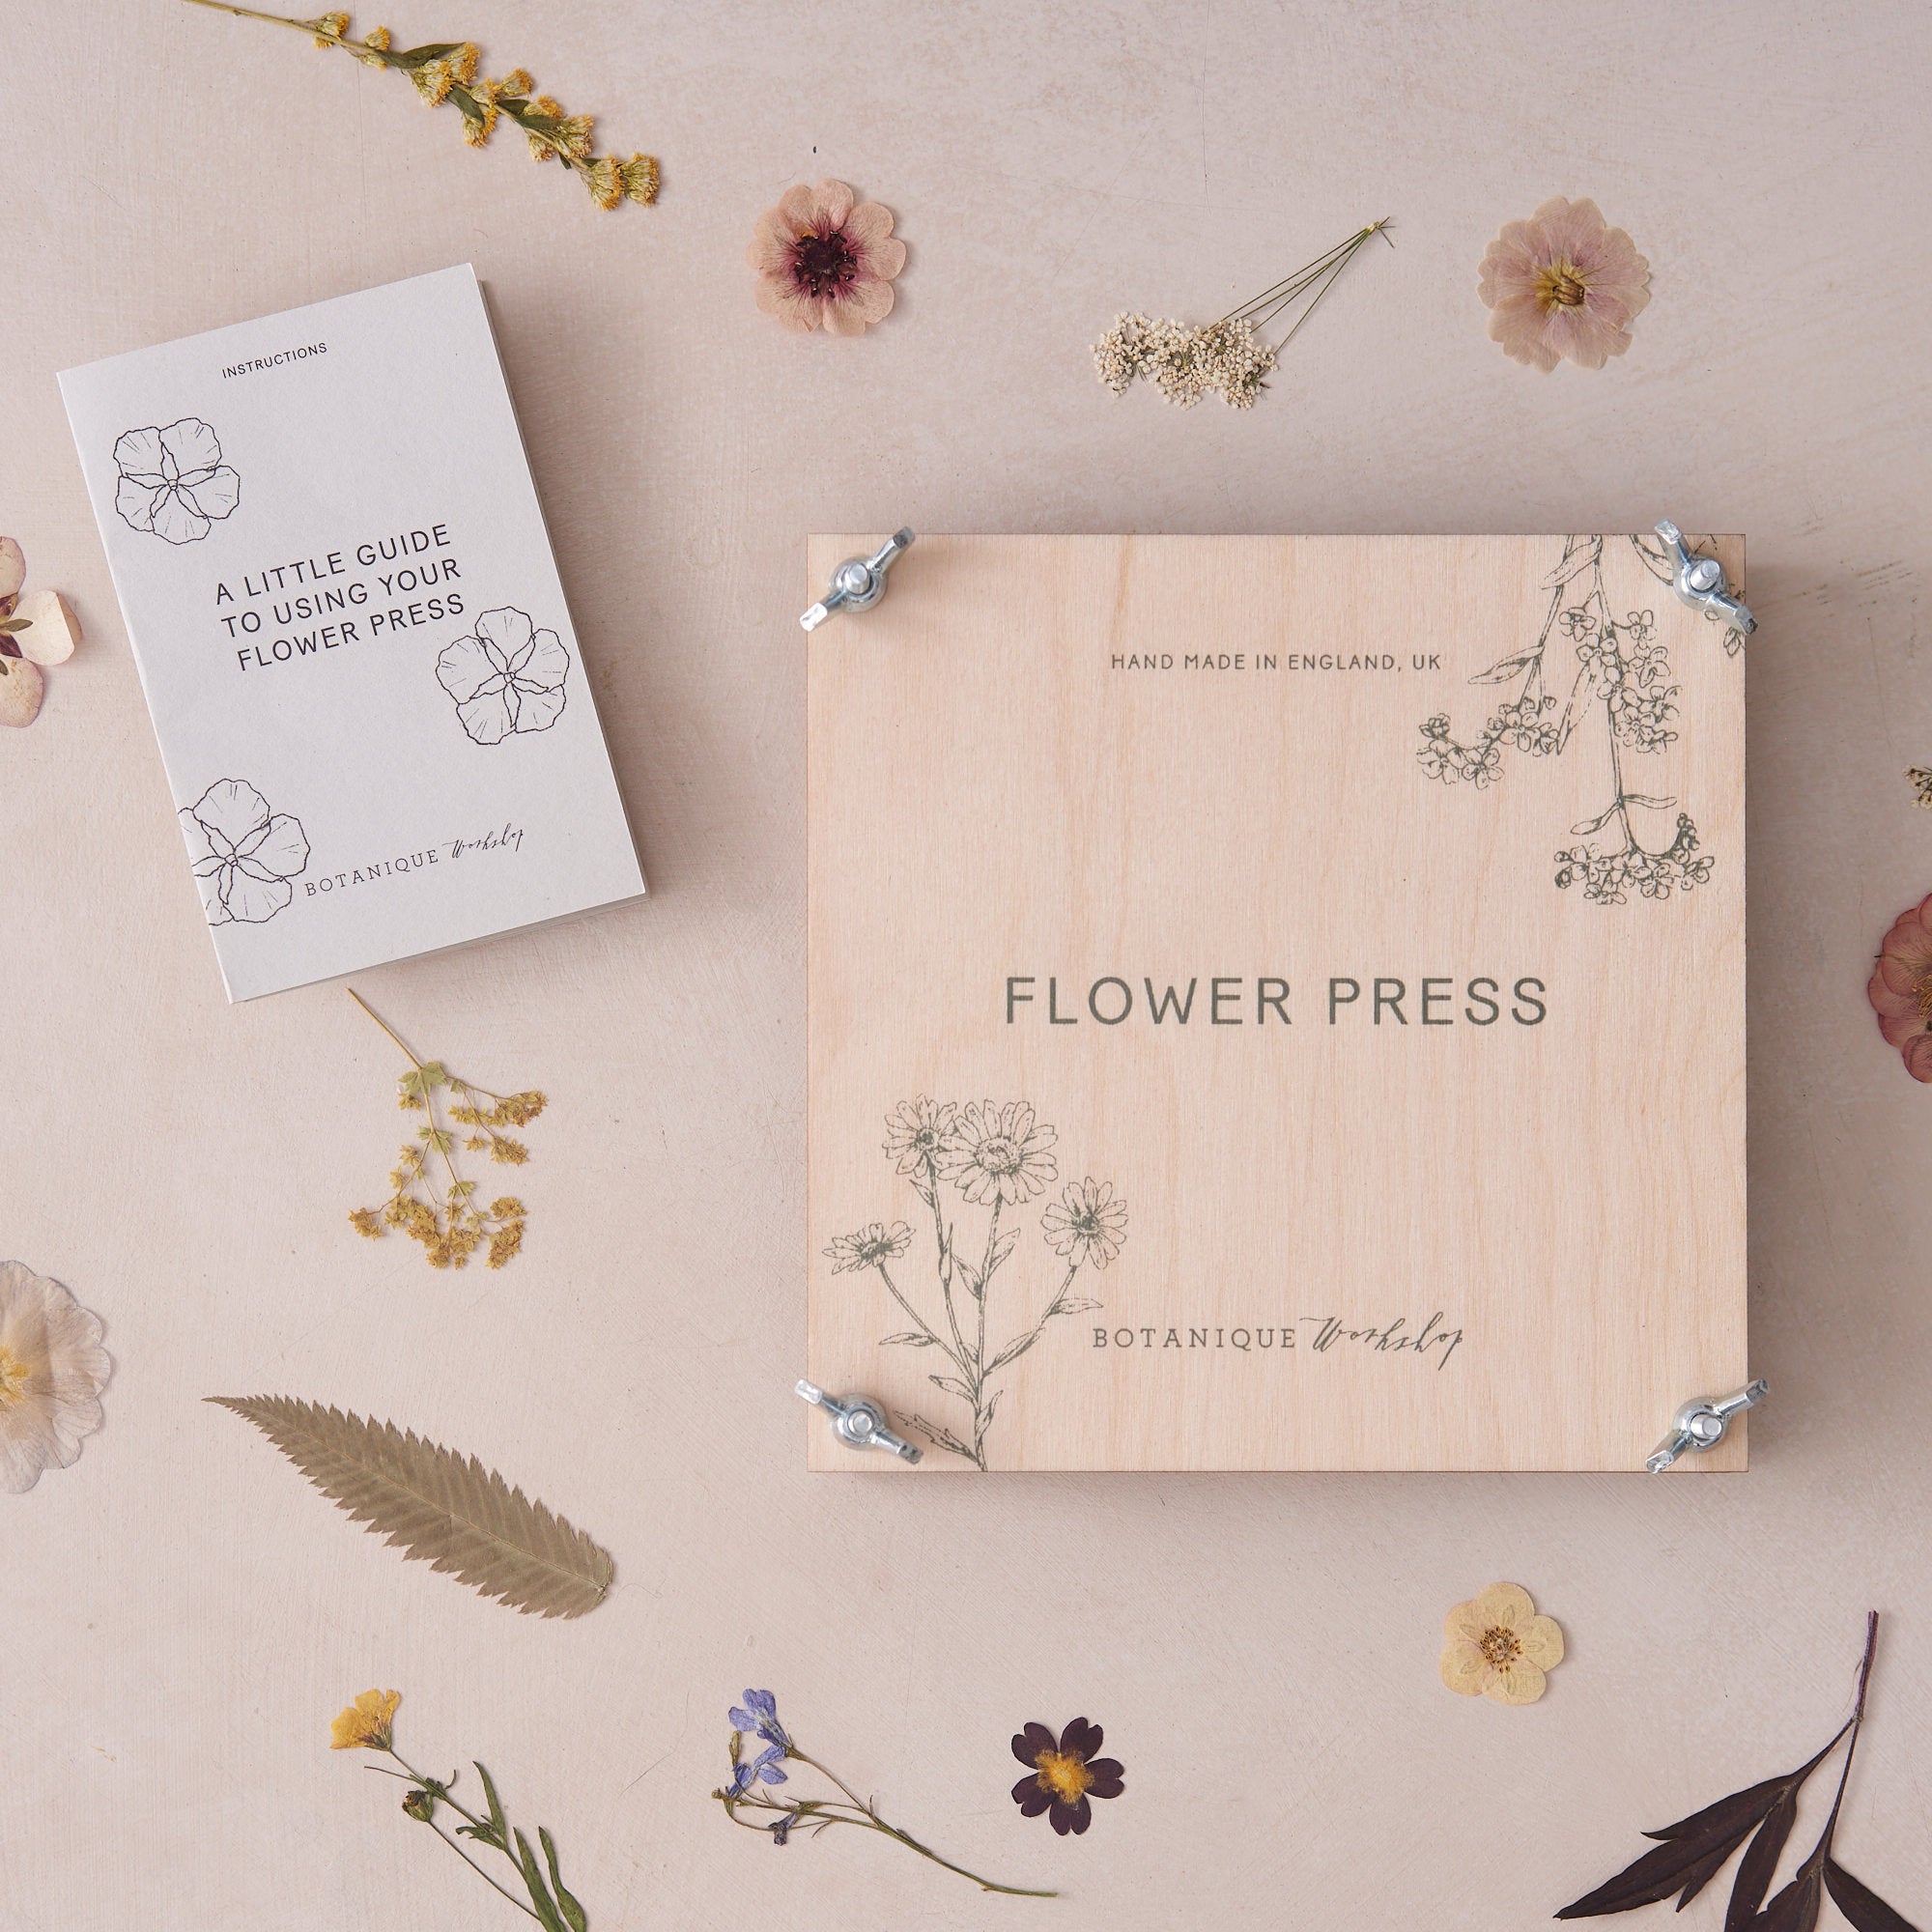 Large Wooden Flower Press Kit - Create Botanical Art & Hand-Made Cards -  Little Garden Shop